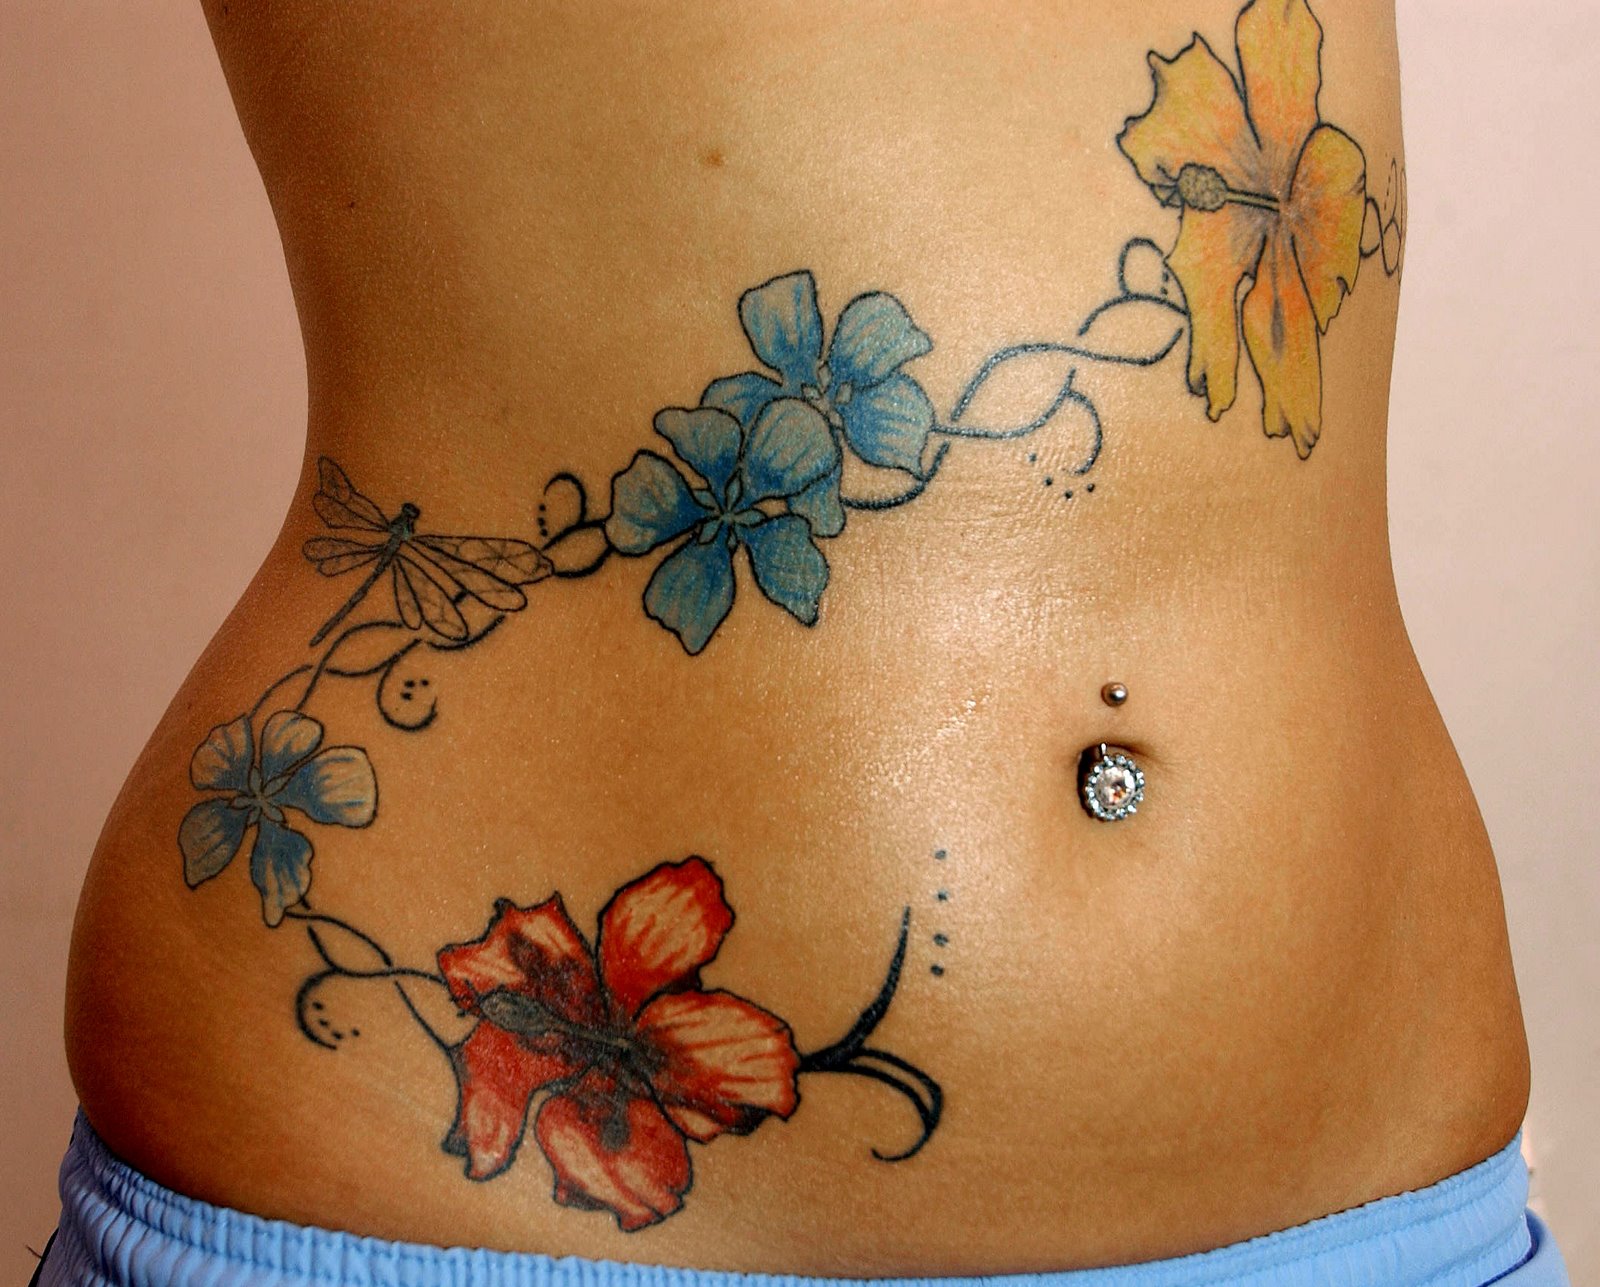 http://4.bp.blogspot.com/-1DzWjN2R5dE/TrQCLKxqJAI/AAAAAAAAGKk/wkHVqWgnsBo/s1600/Flower-Tattoo-Design-on-Stomech-for-Women.jpg